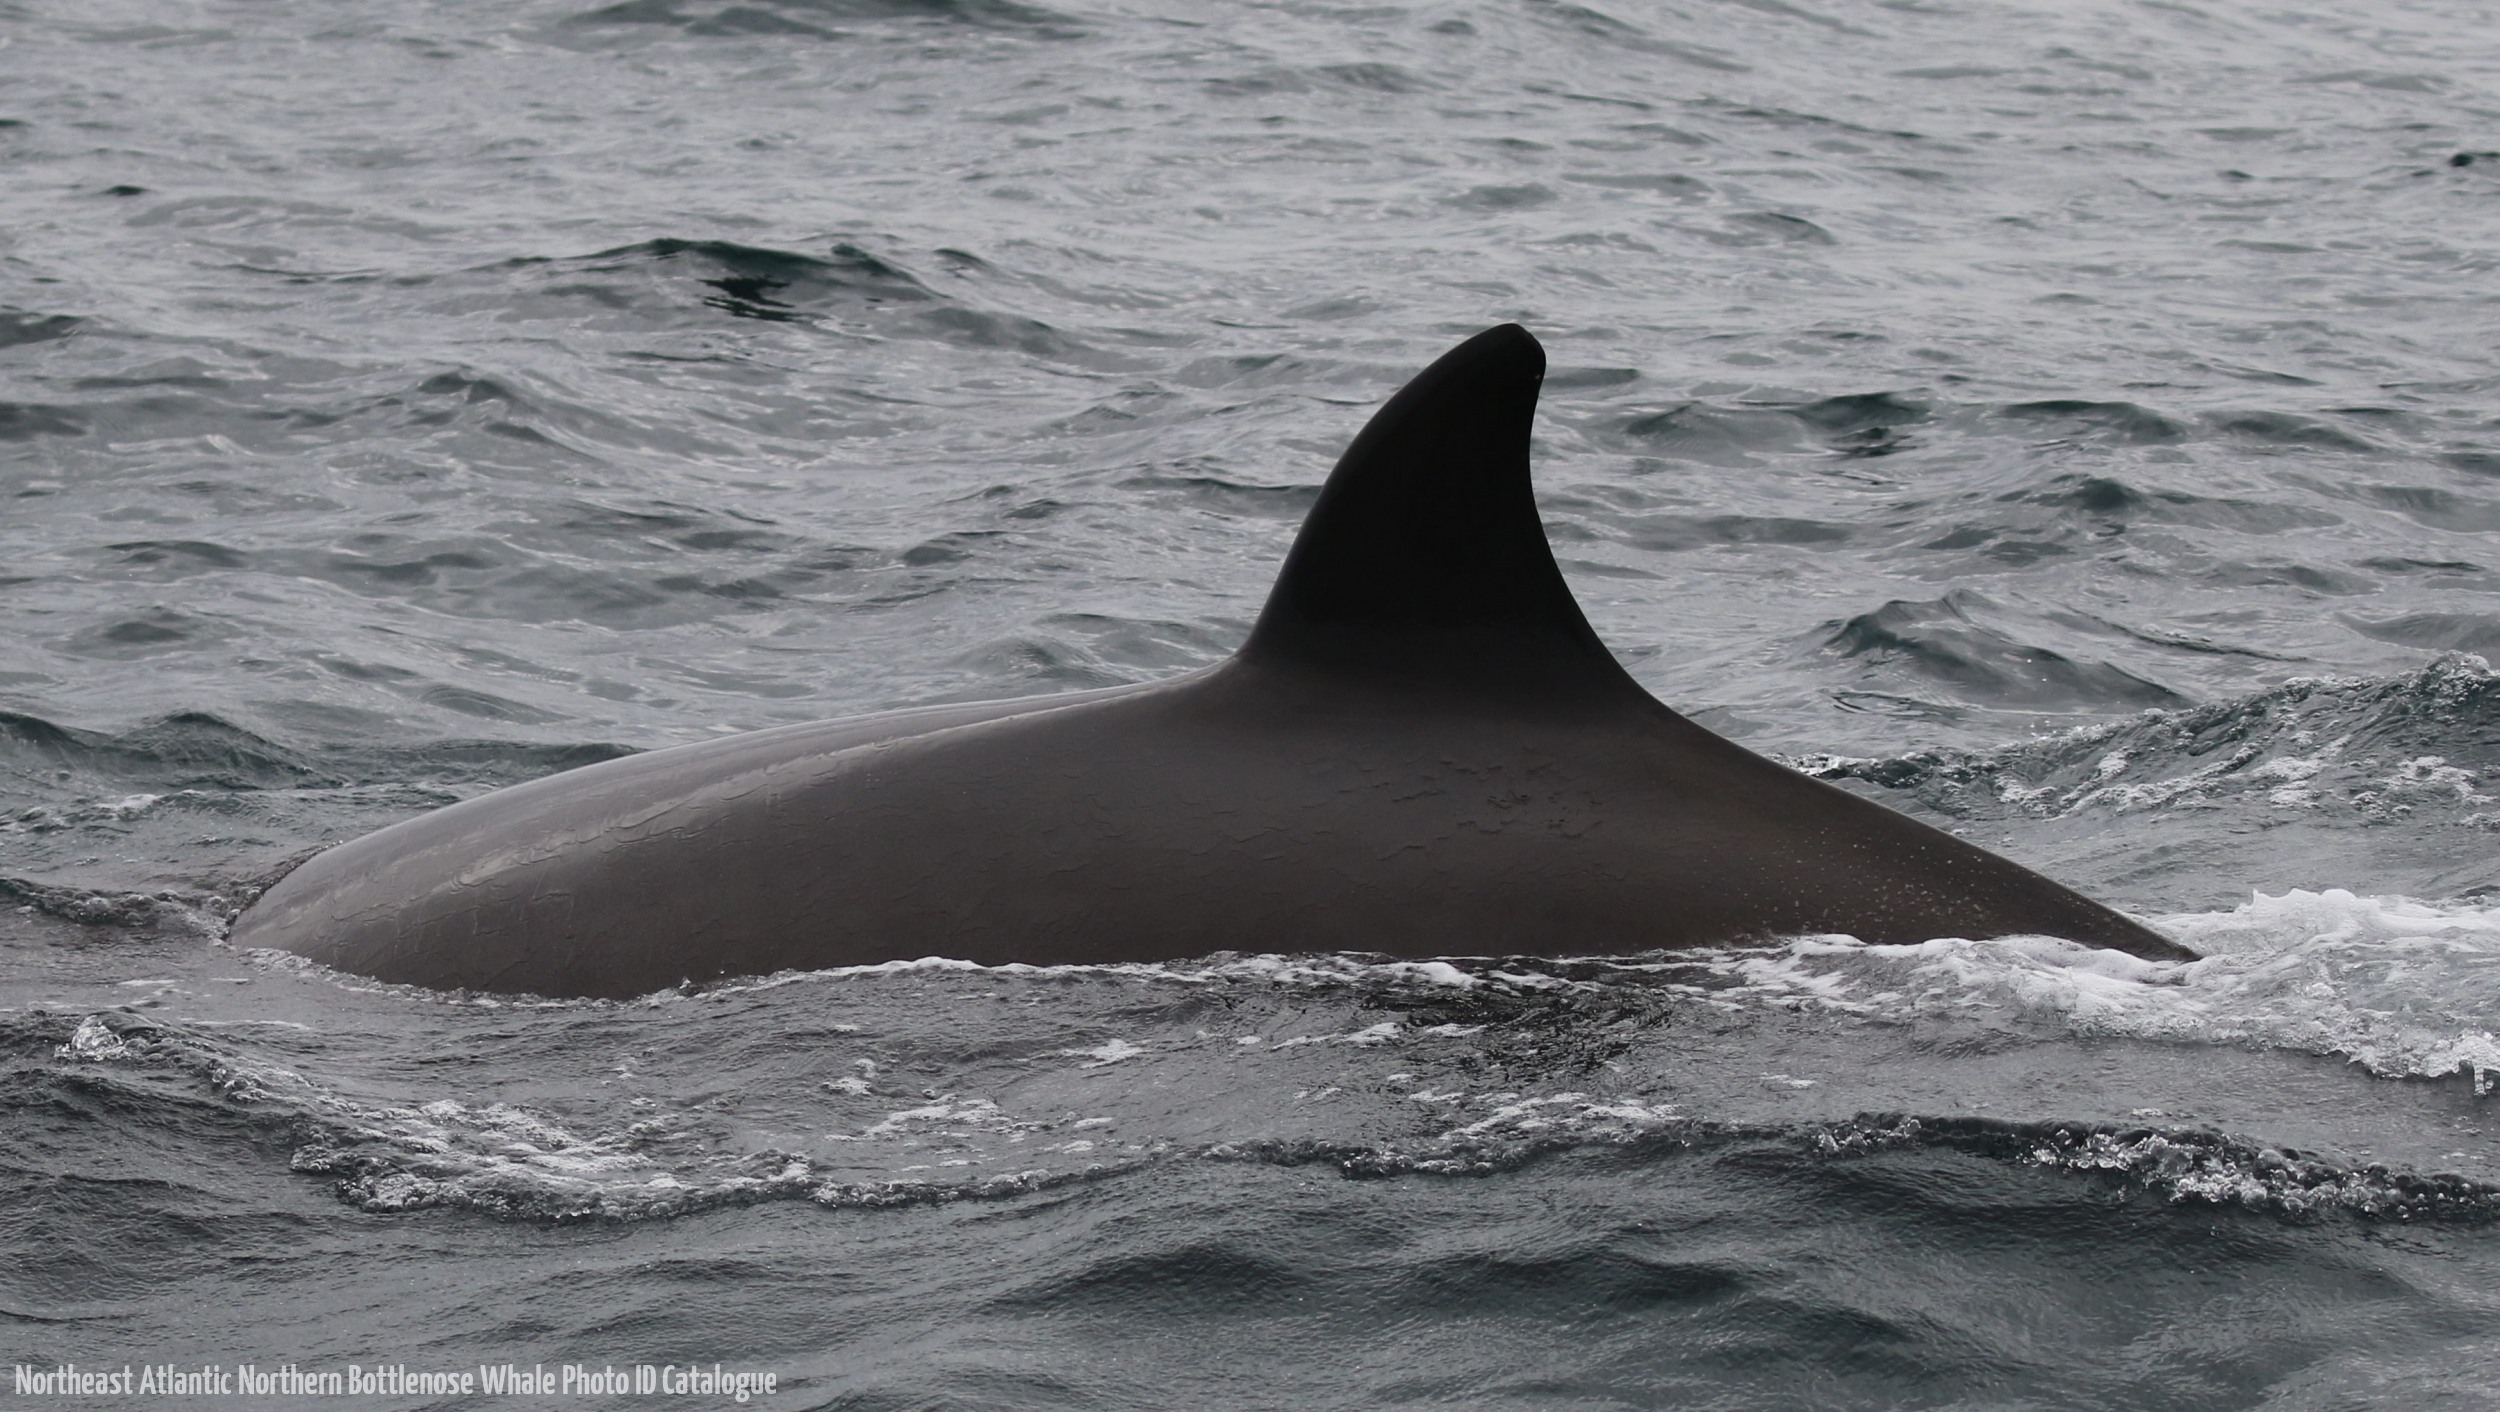 Whale ID: 0204,  Date taken: 21-06-2016,  Photographer: Eilidh Siegal